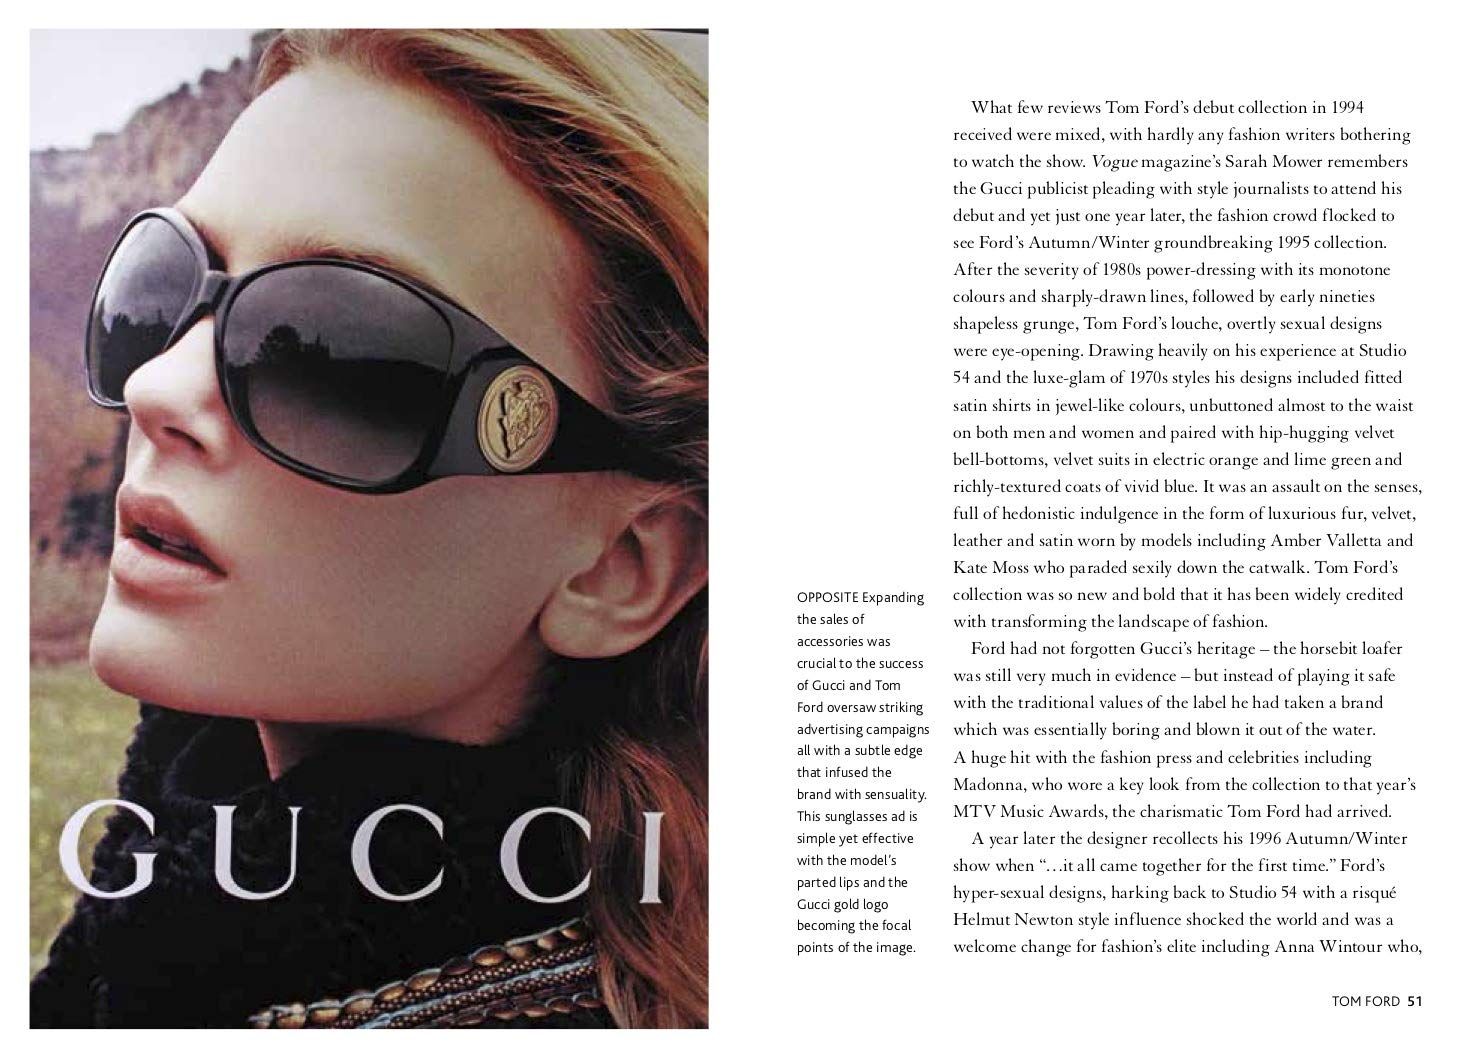  Little Book of Gucci_Karen Homer_9781787394582_ Welbeck Publishing Group 